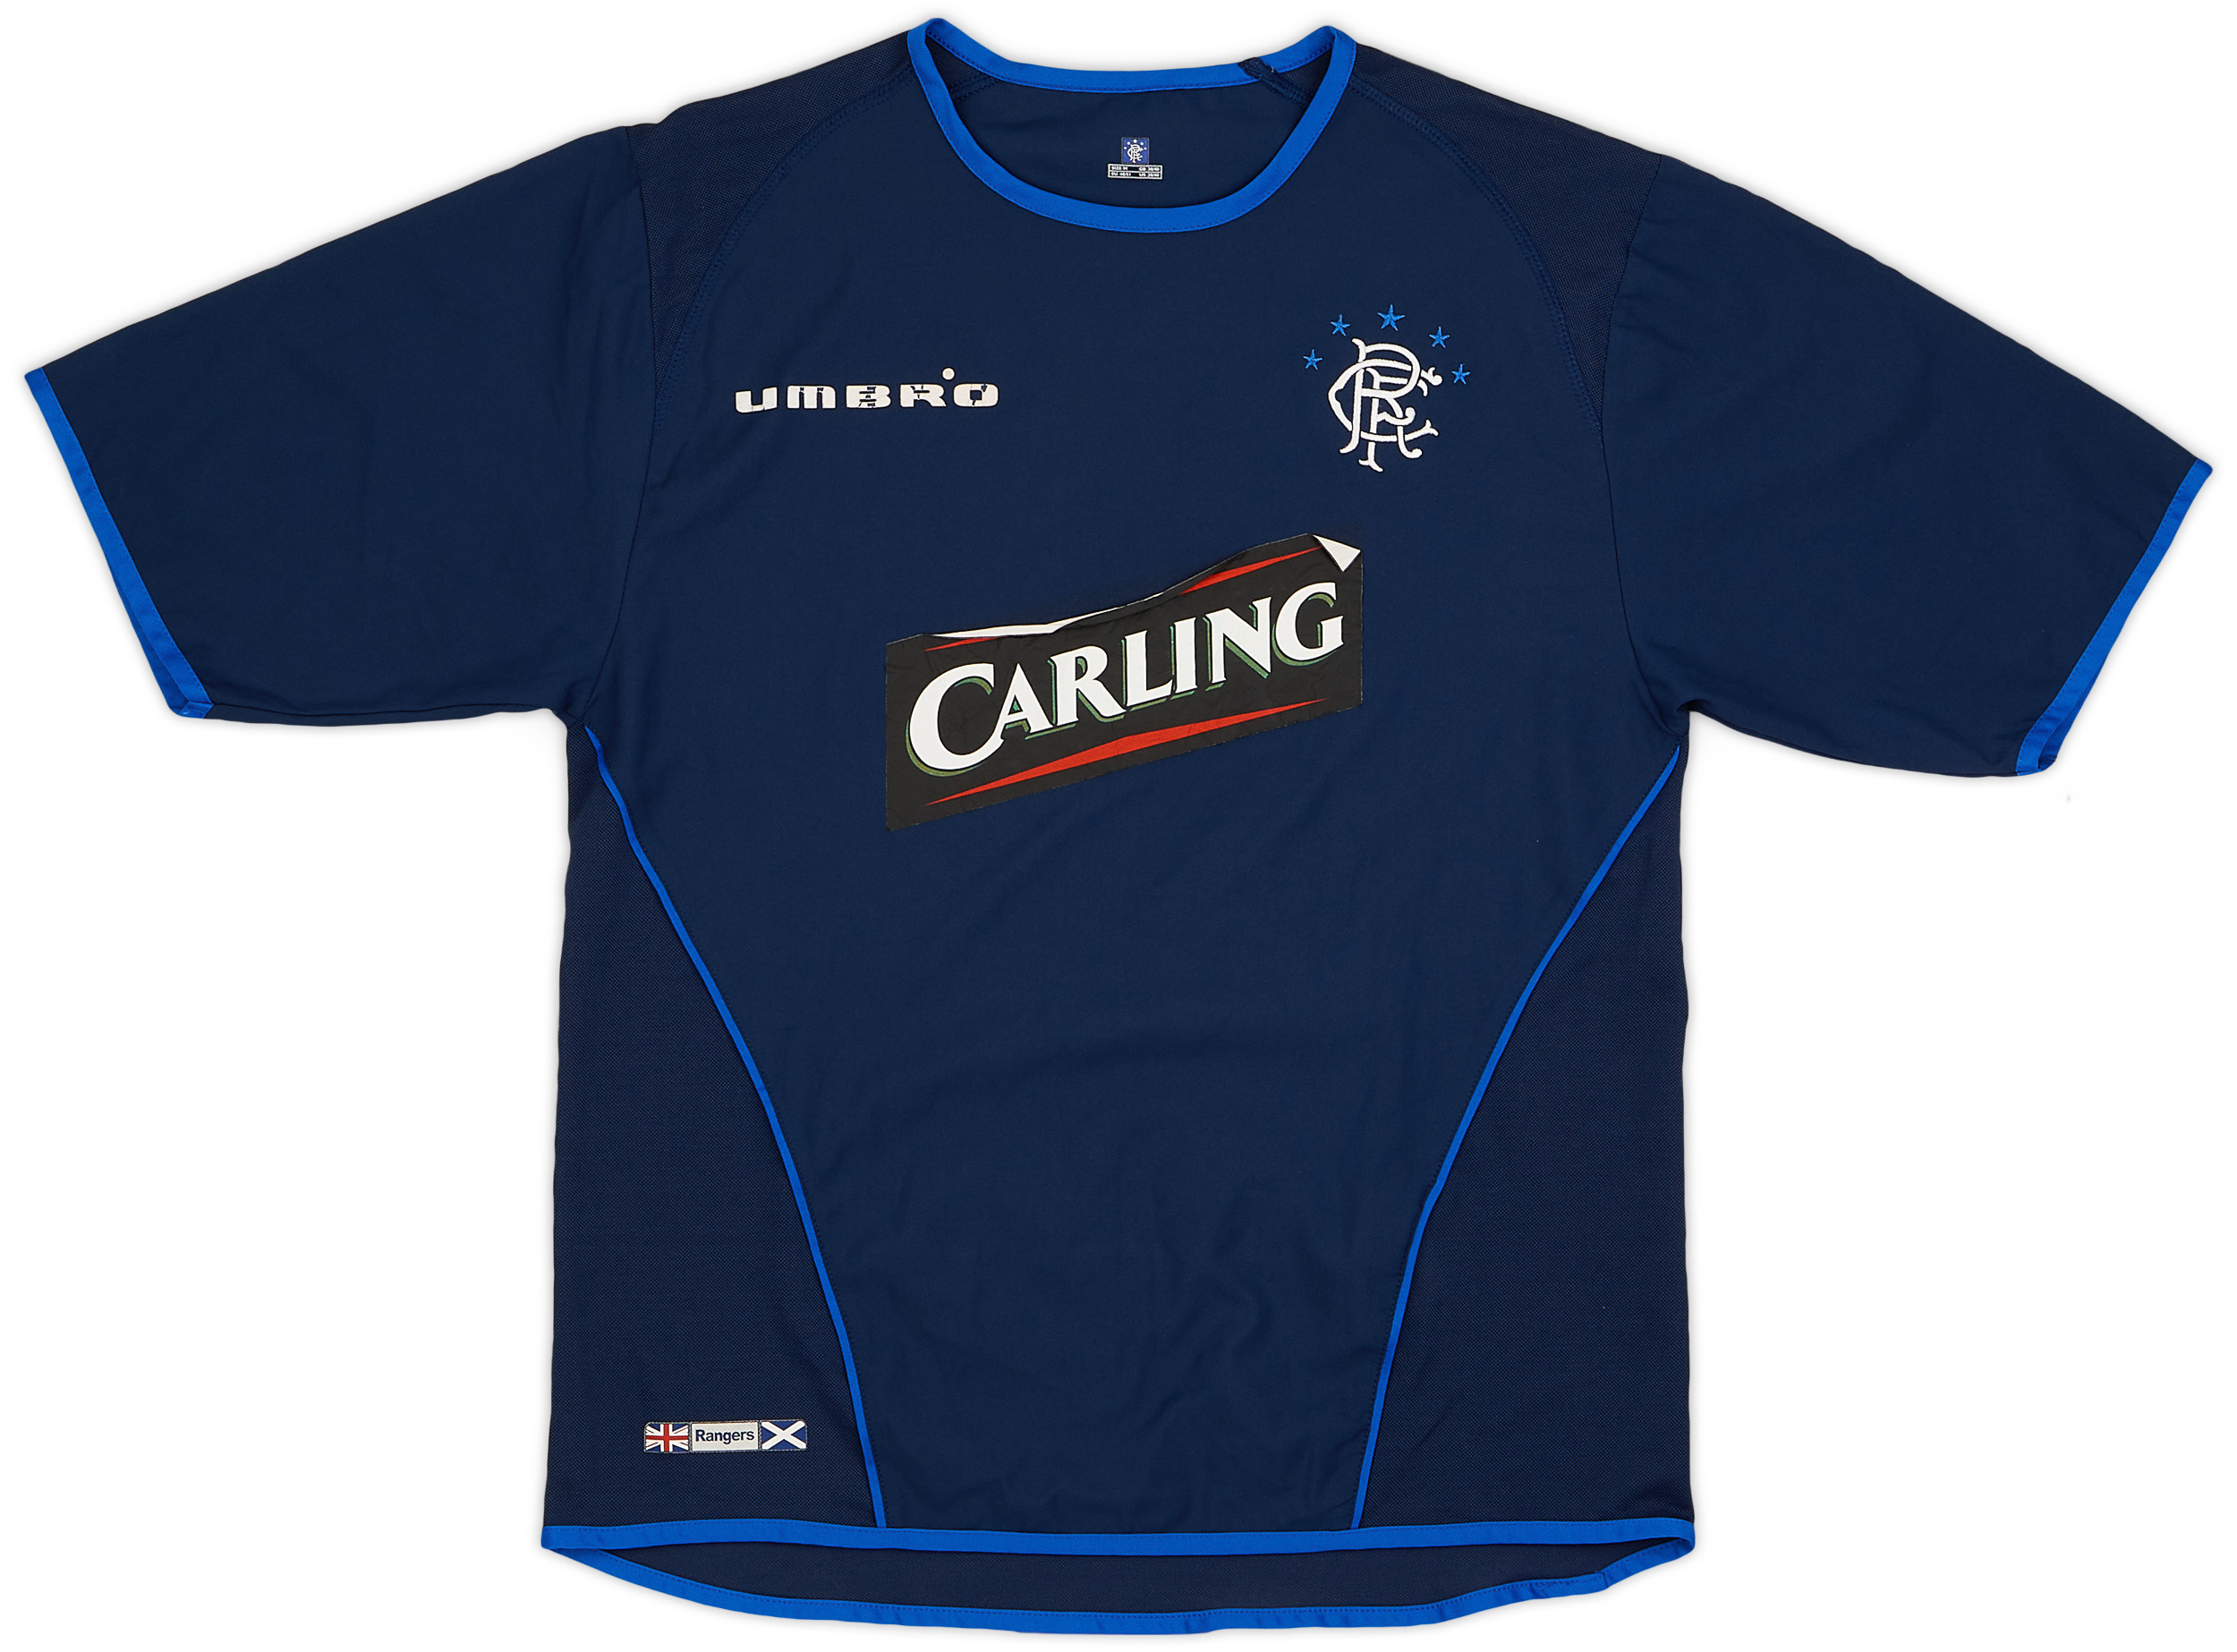 2005-06 Rangers Third Shirt - 4/10 - ()